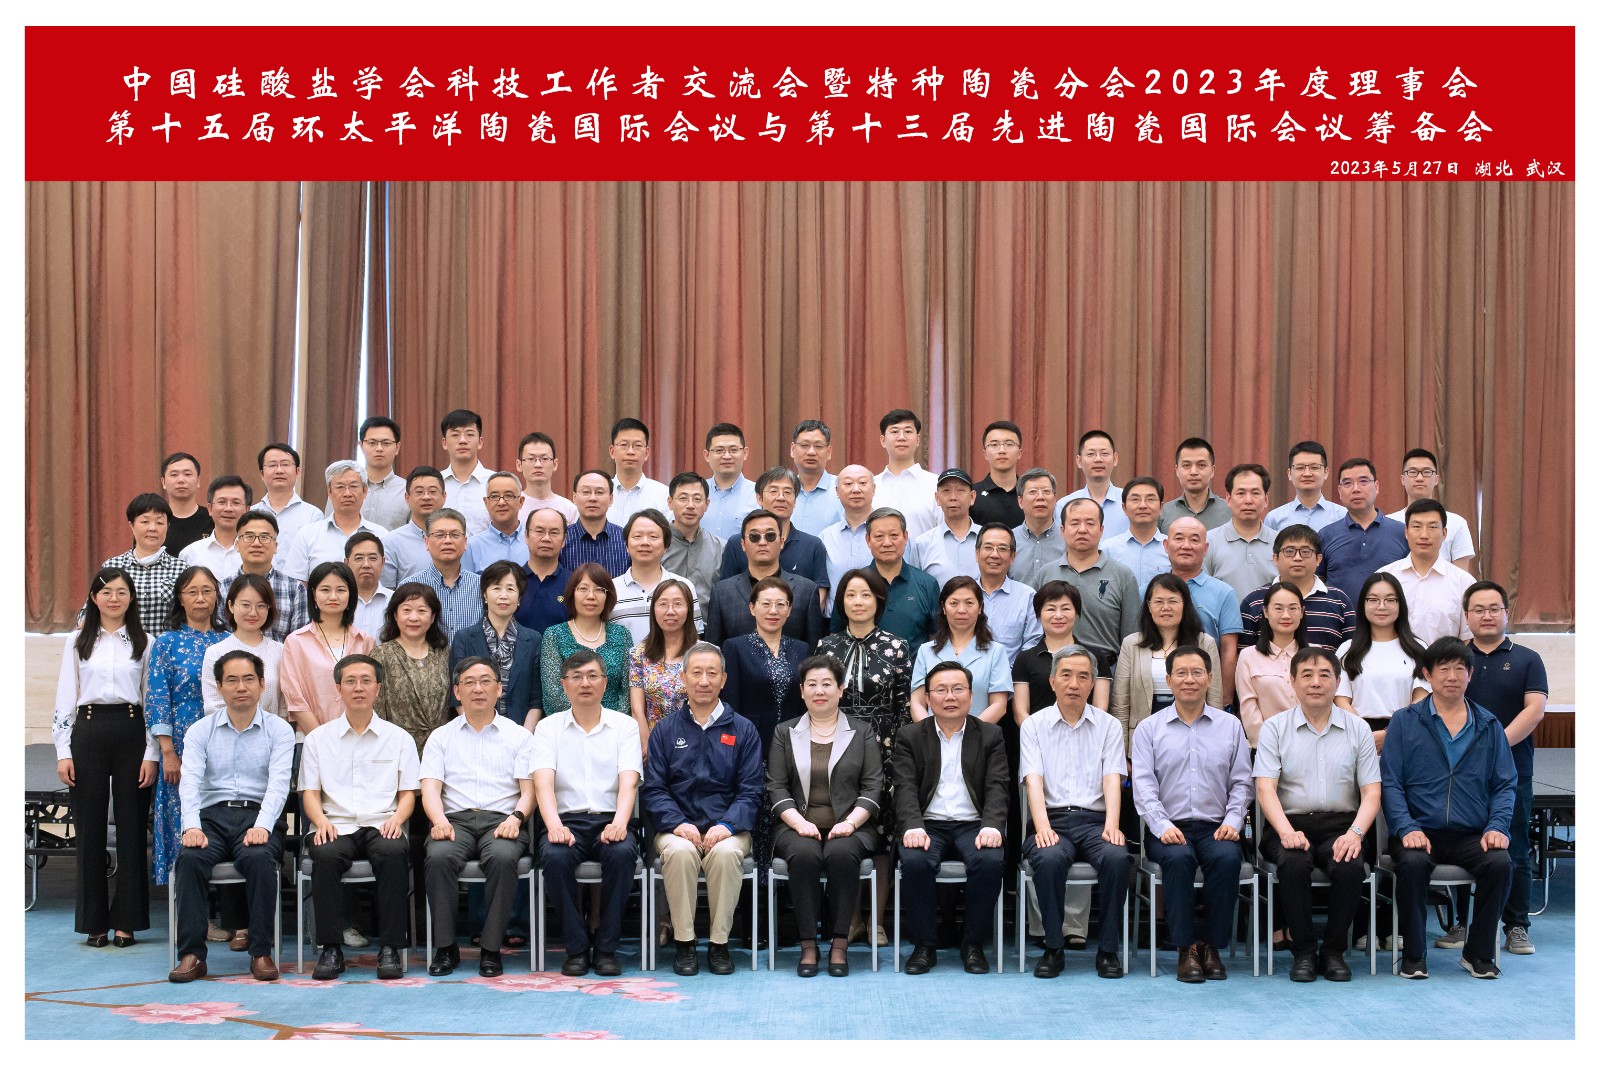 中国硅酸盐学会科技工作者交流会暨第六届优秀博士学位论文奖颁奖仪式在武汉举办